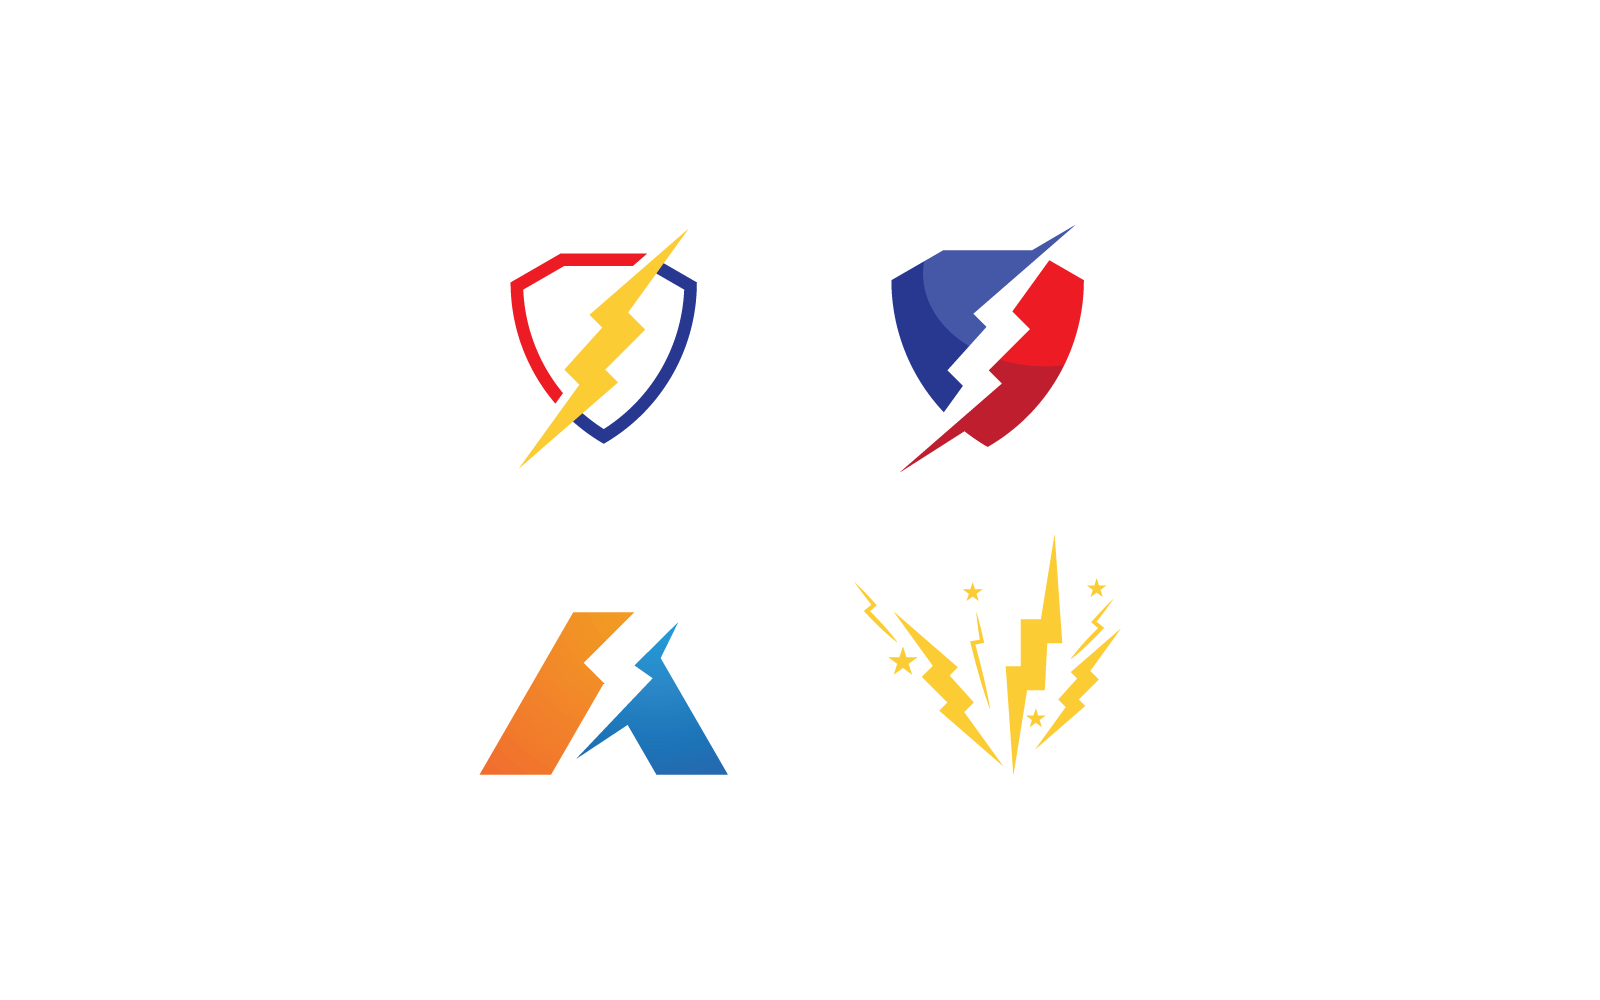 Power lightning power energy design illustration logo vector